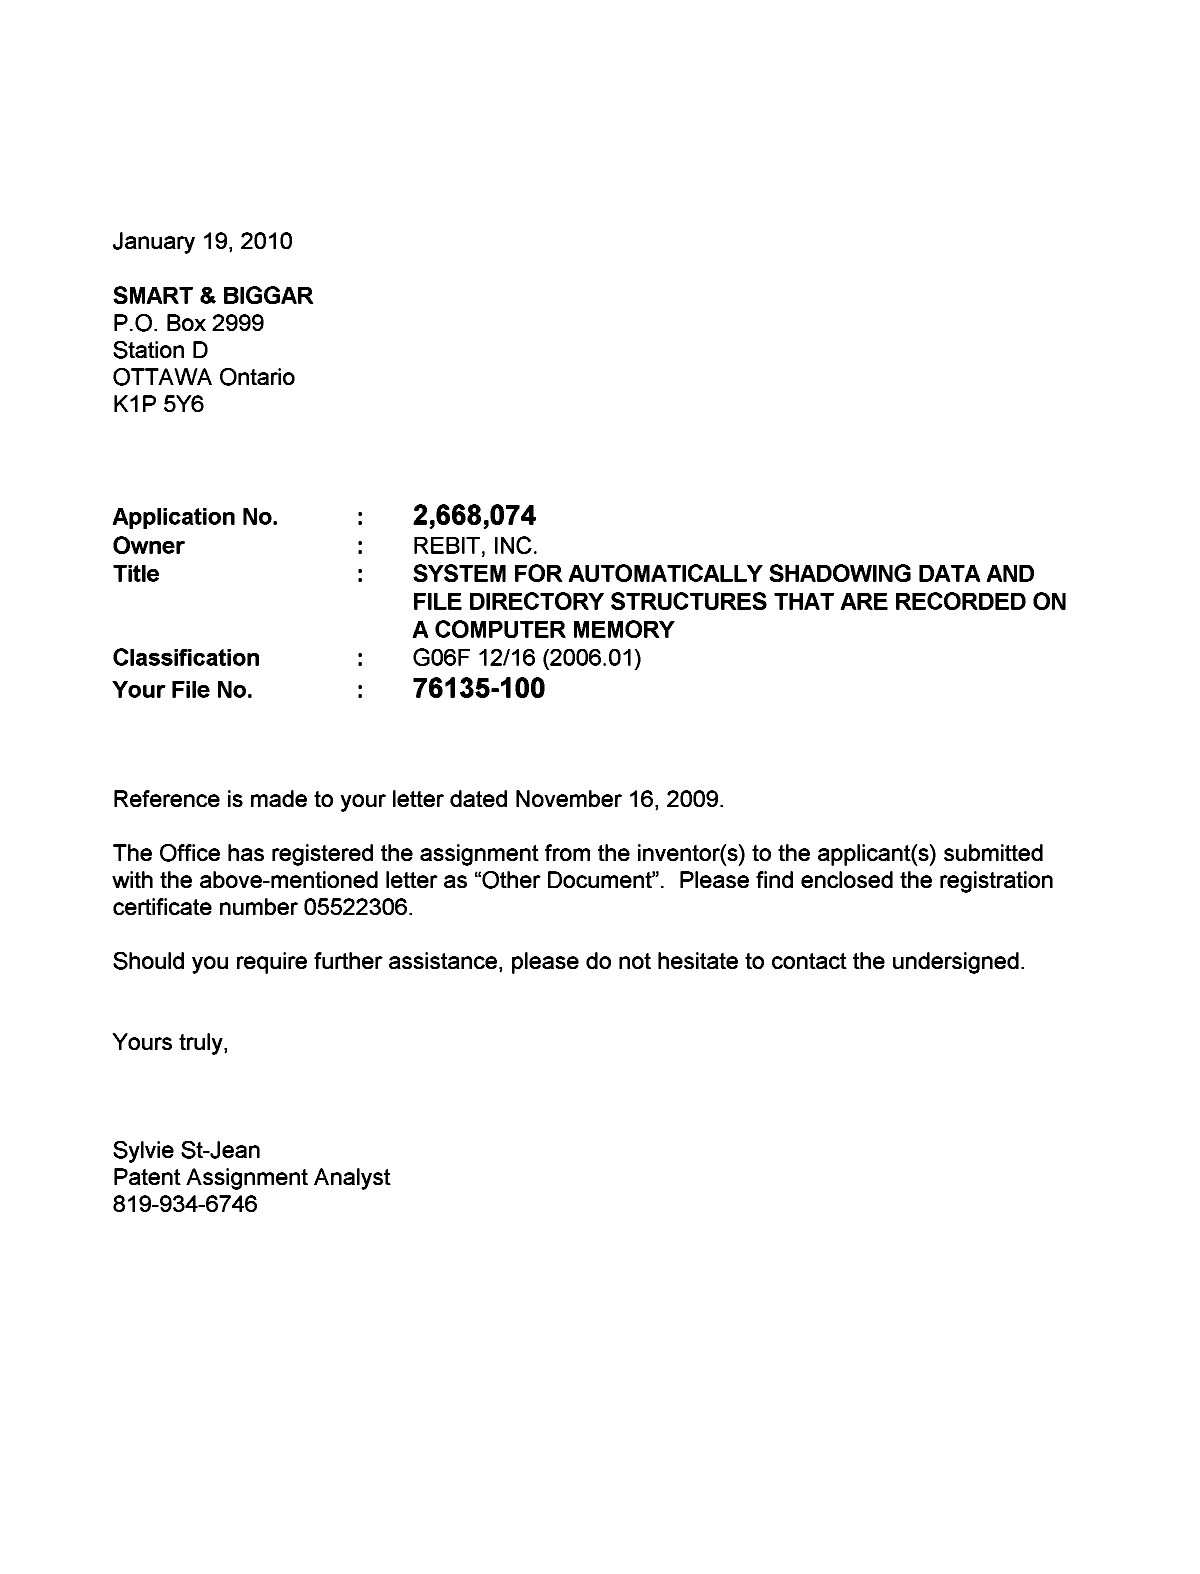 Document de brevet canadien 2668074. Correspondance 20100119. Image 1 de 1